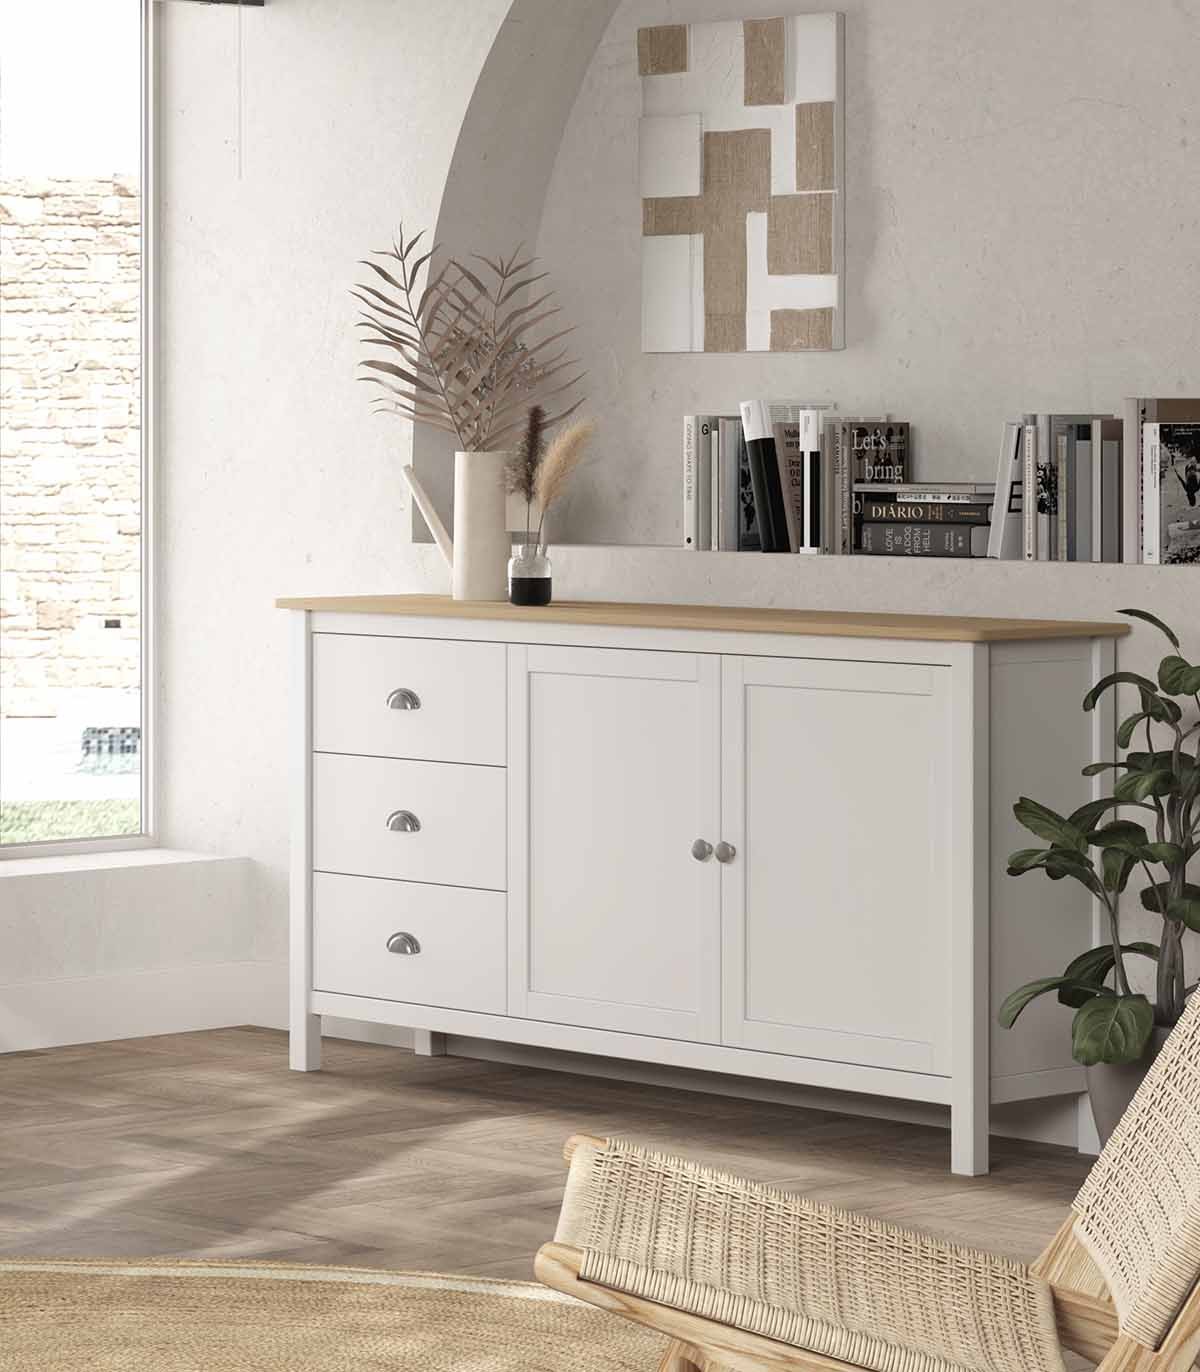 Mueble Aparador de madera MISTICO, Mobiliario clásico